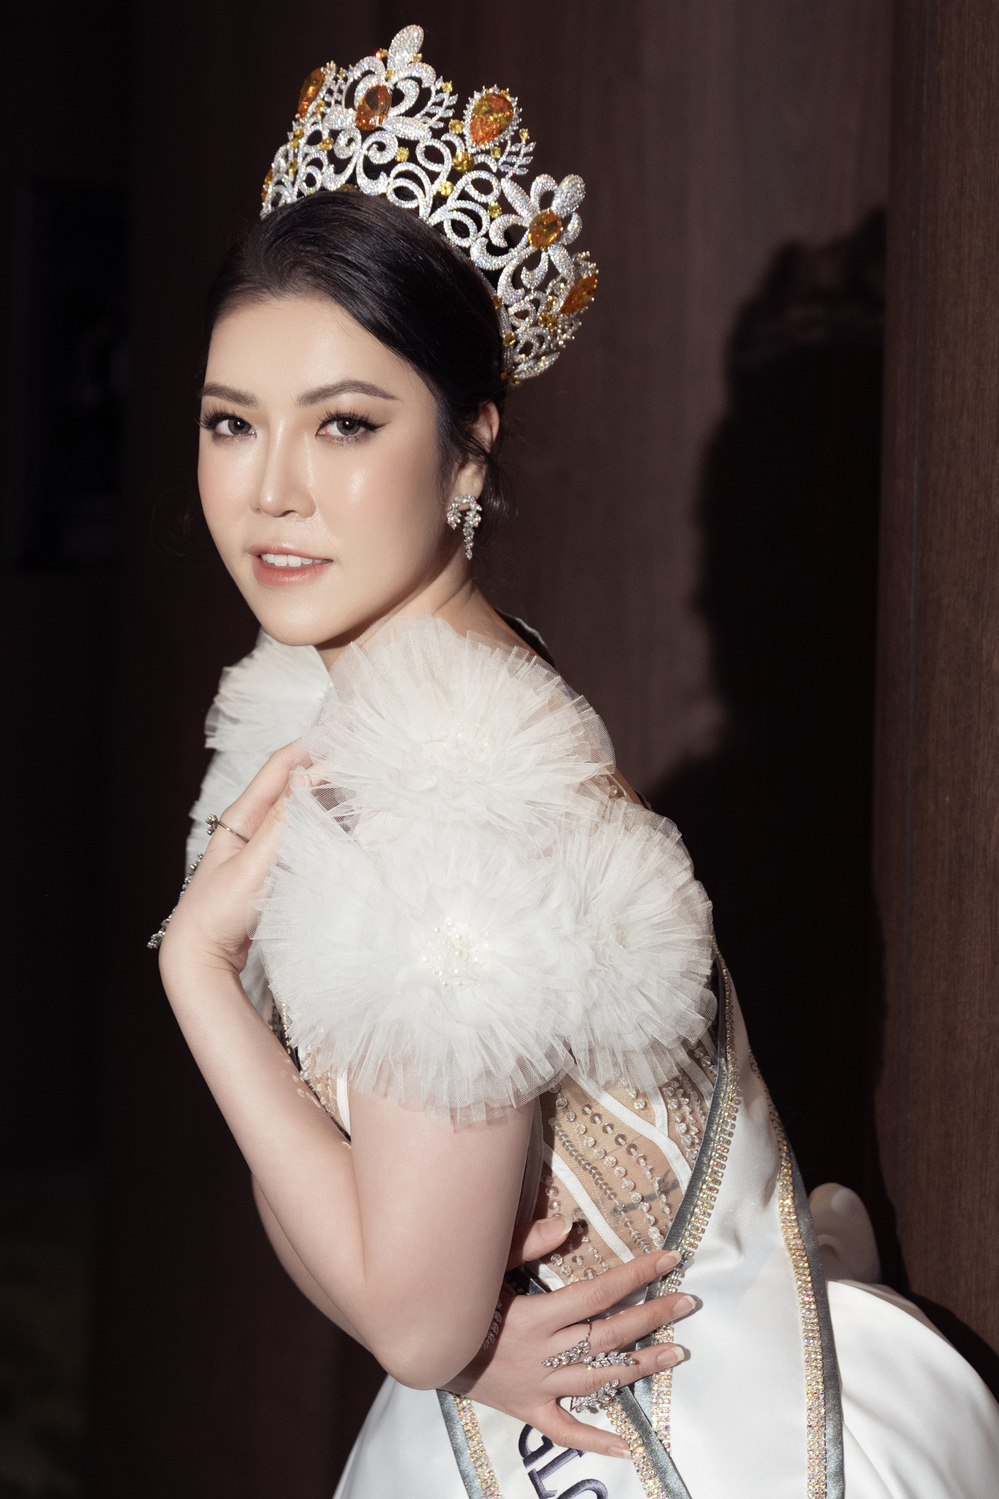 Hoa hậu Trần Hà Trâm Anh, CEO Vũ Thái “xuất khẩu” đầu năm sang Mã Lai để chấm thi - Ảnh 6.